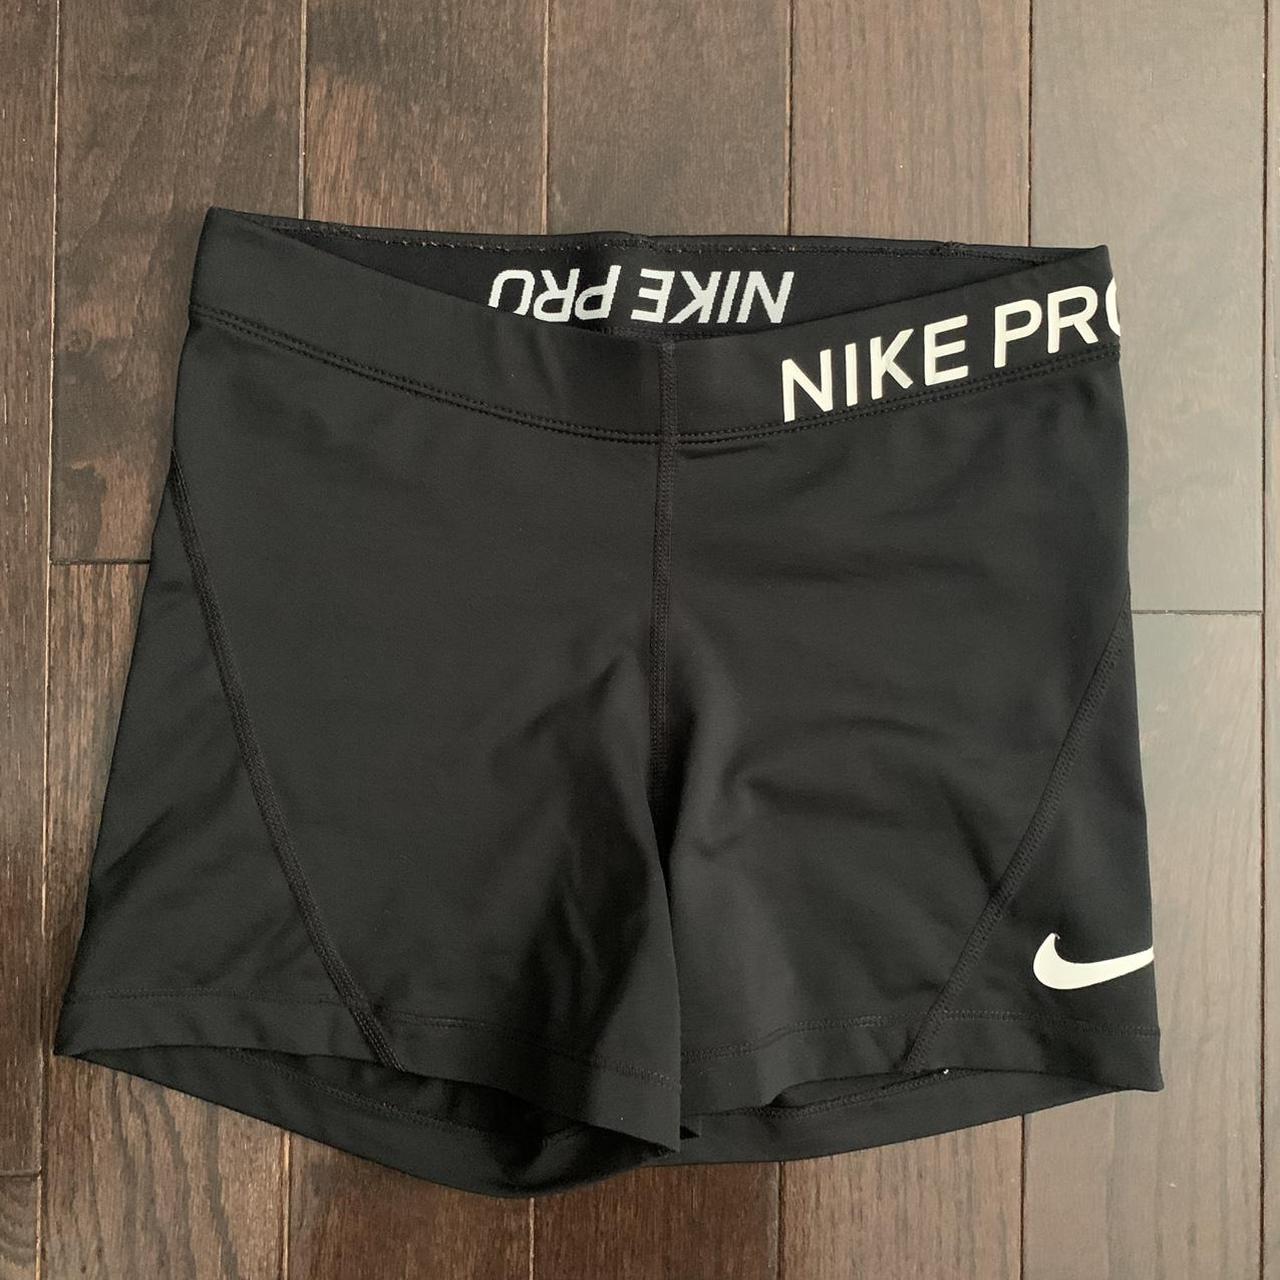 Product Image 1 - Nike Pro Shorts

• Good condition,